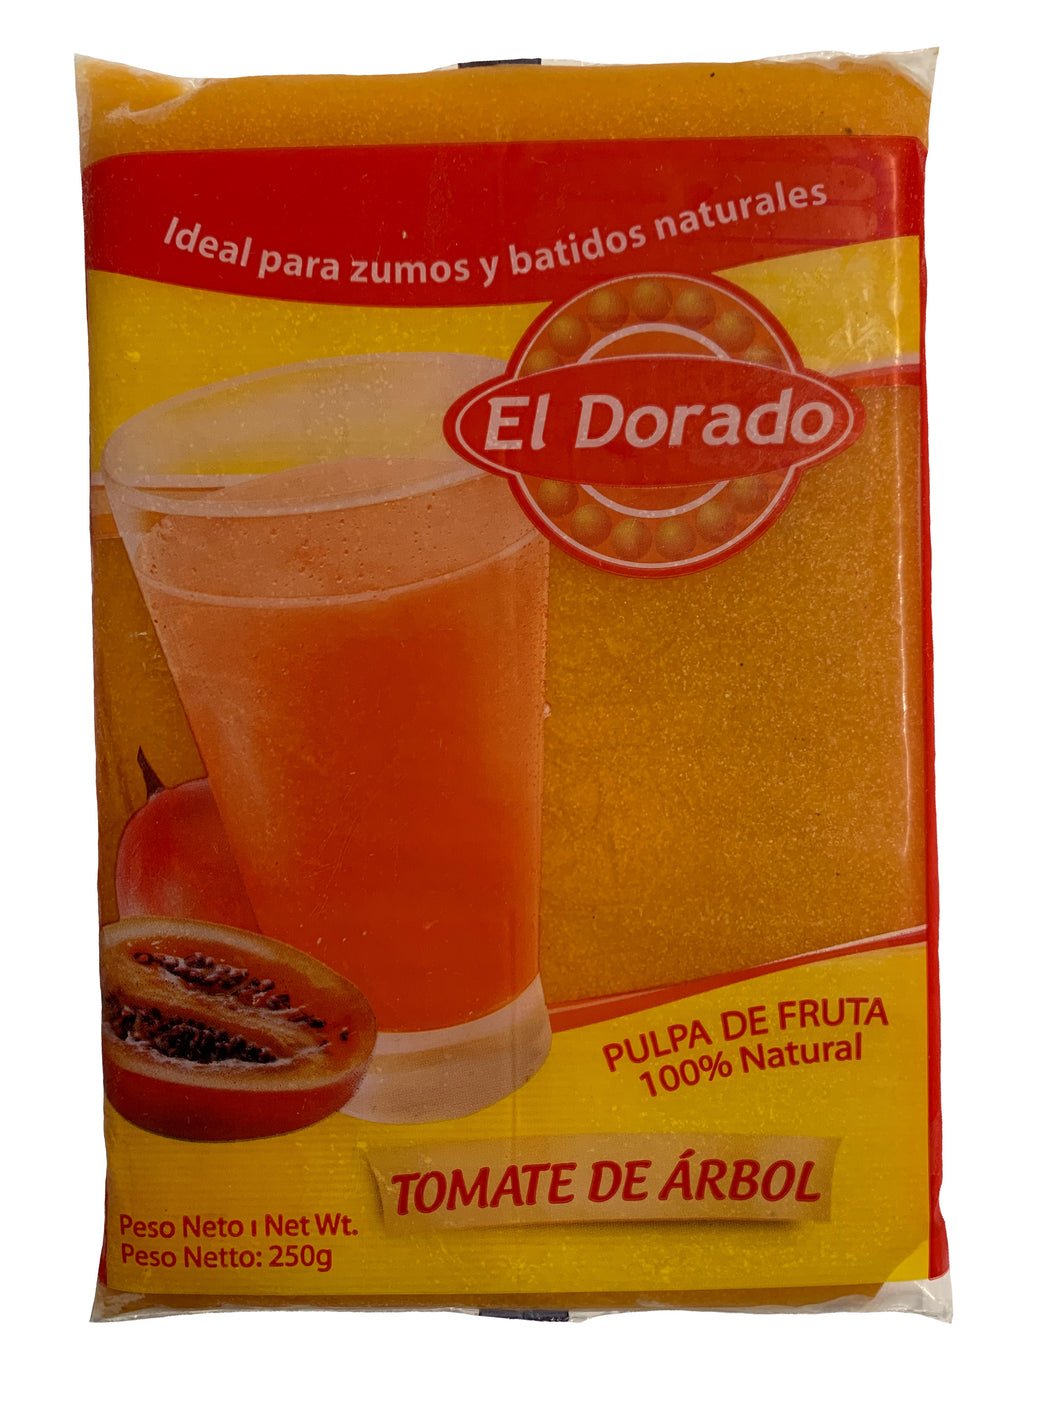 [FROZEN] El Dorado Tamarillo Fruit Pulp - Pulpa de Tomate De Arbol 250g